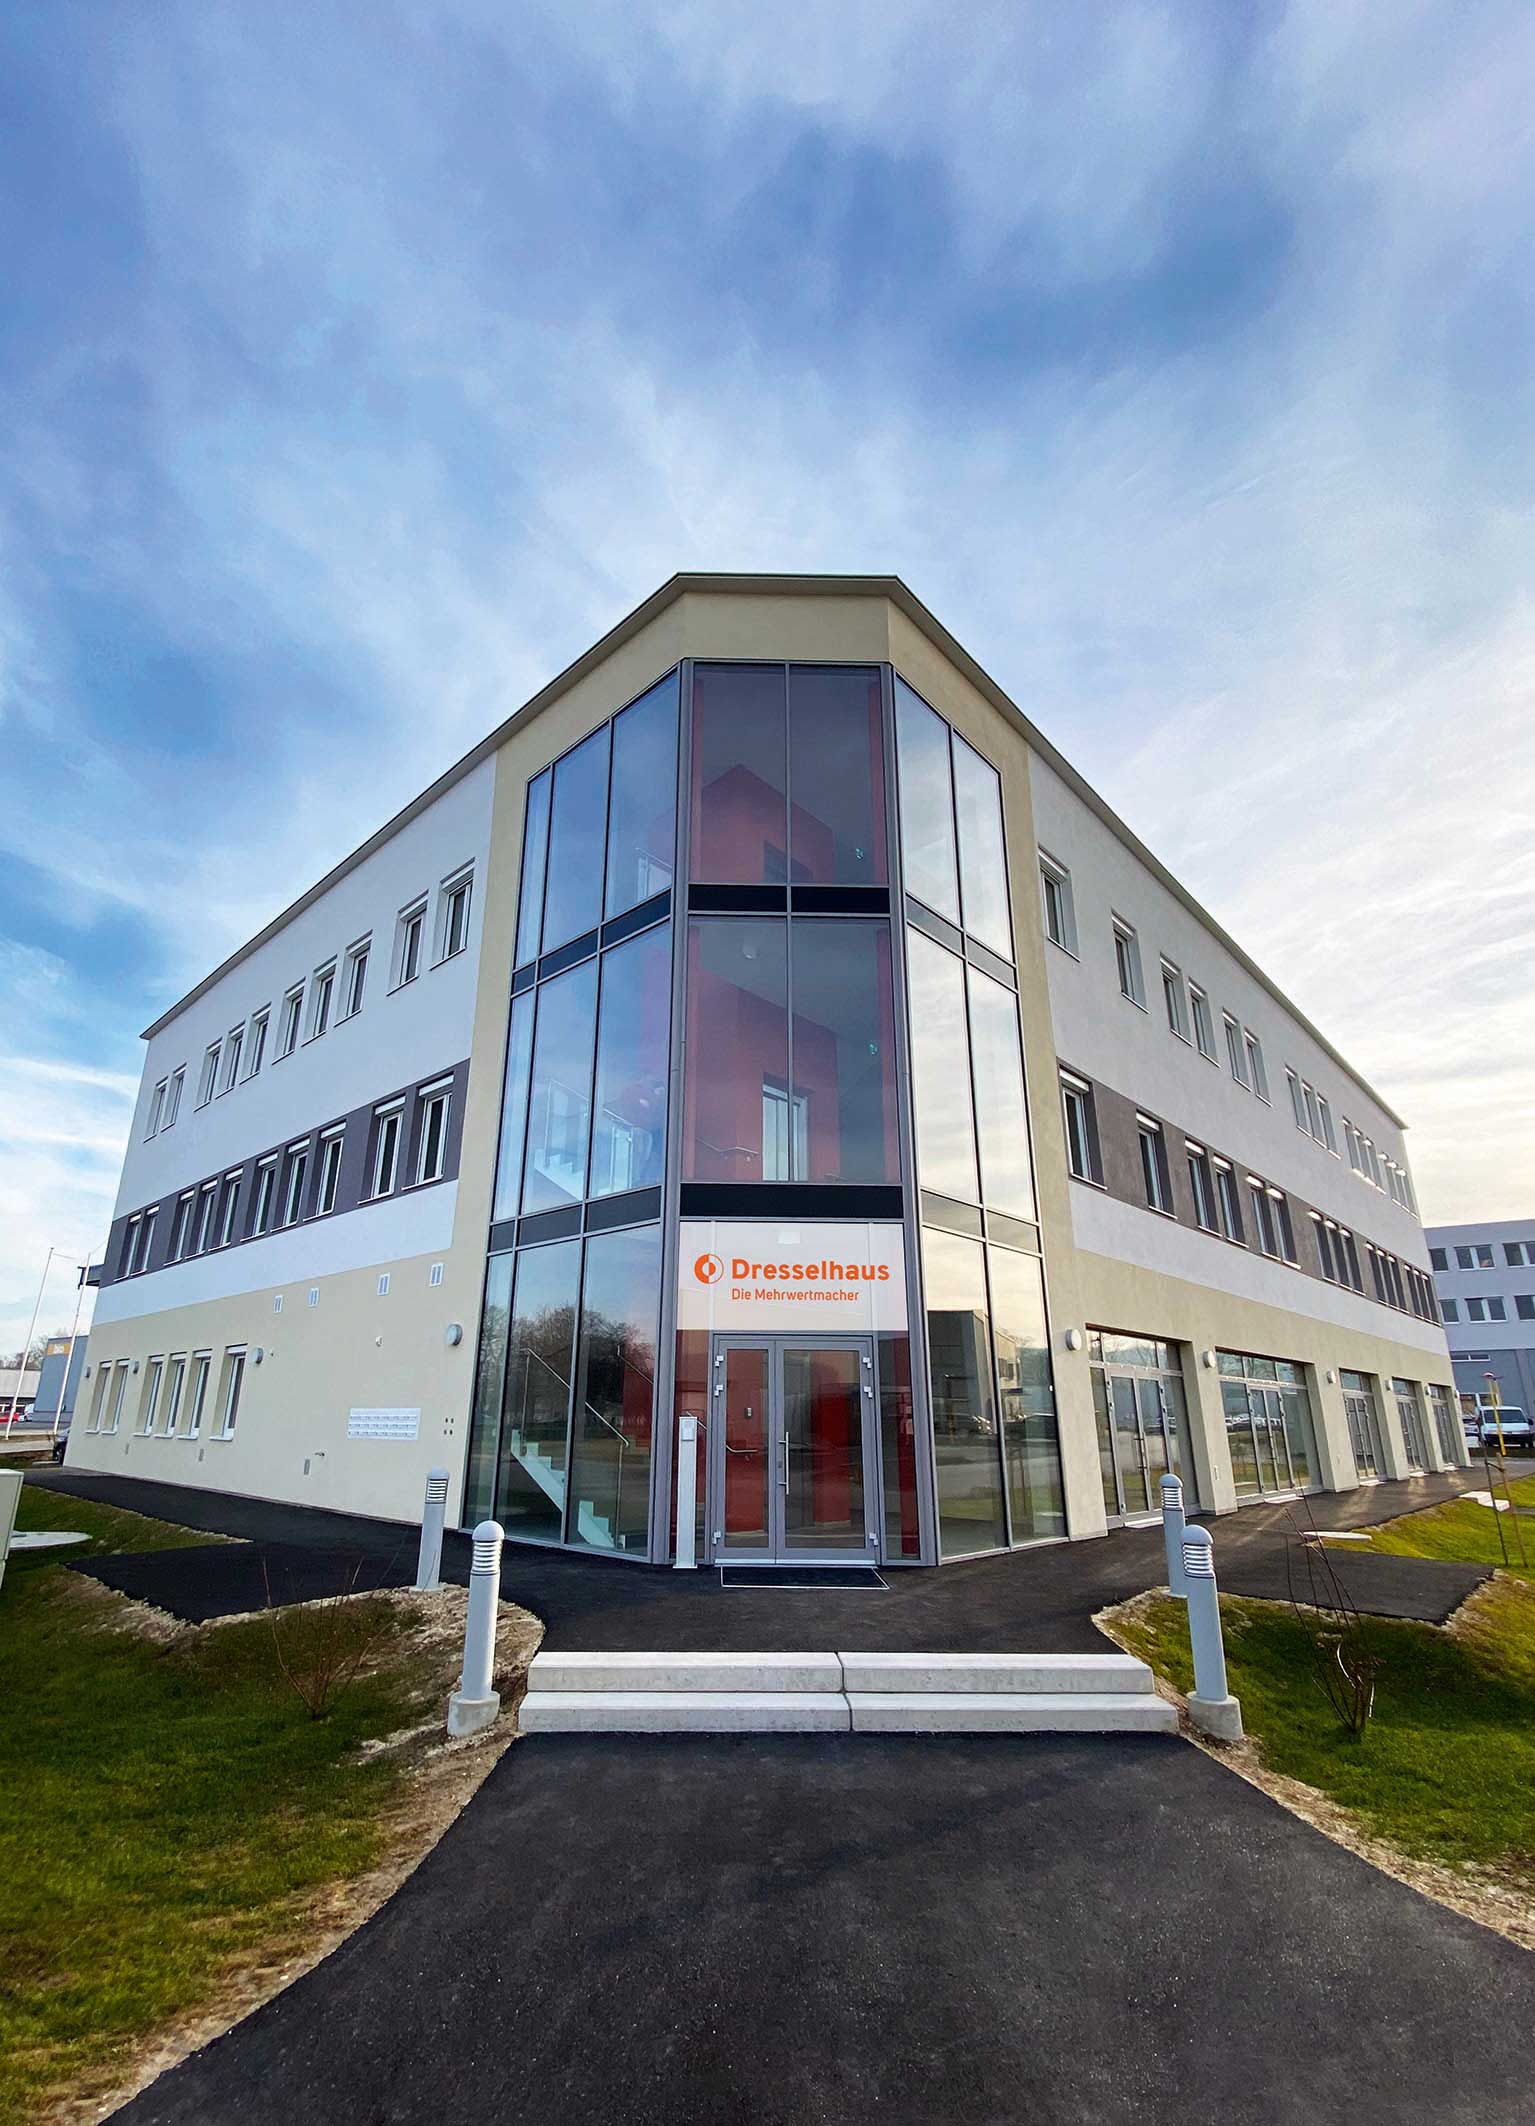 Dresselhaus gründet neue Auslandsgesellschaft in Österreich, Joseph  Dresselhaus GmbH & Co. KG, Story - PresseBox